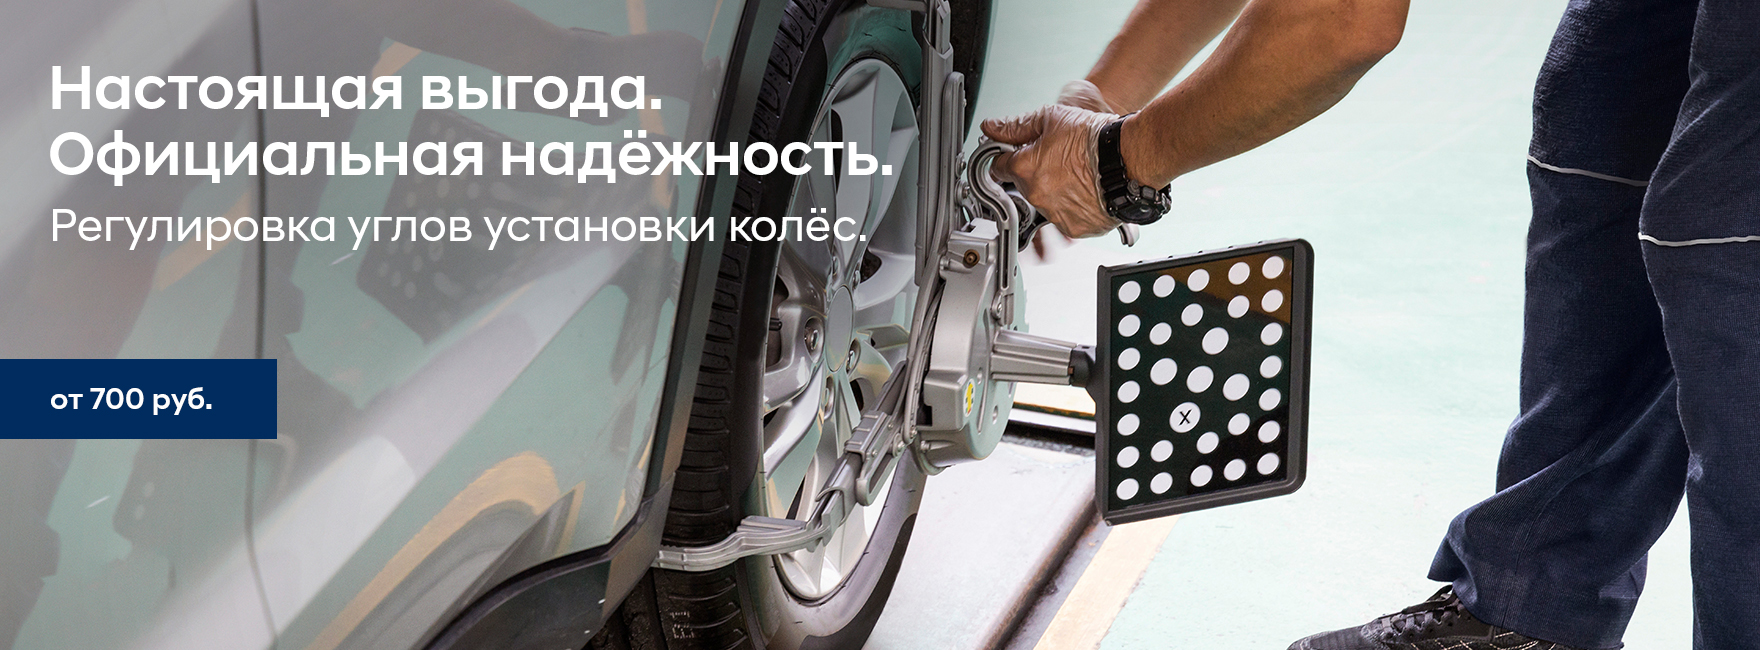 Регулировка углов установки колес в Орехово-АвтоЦентр.